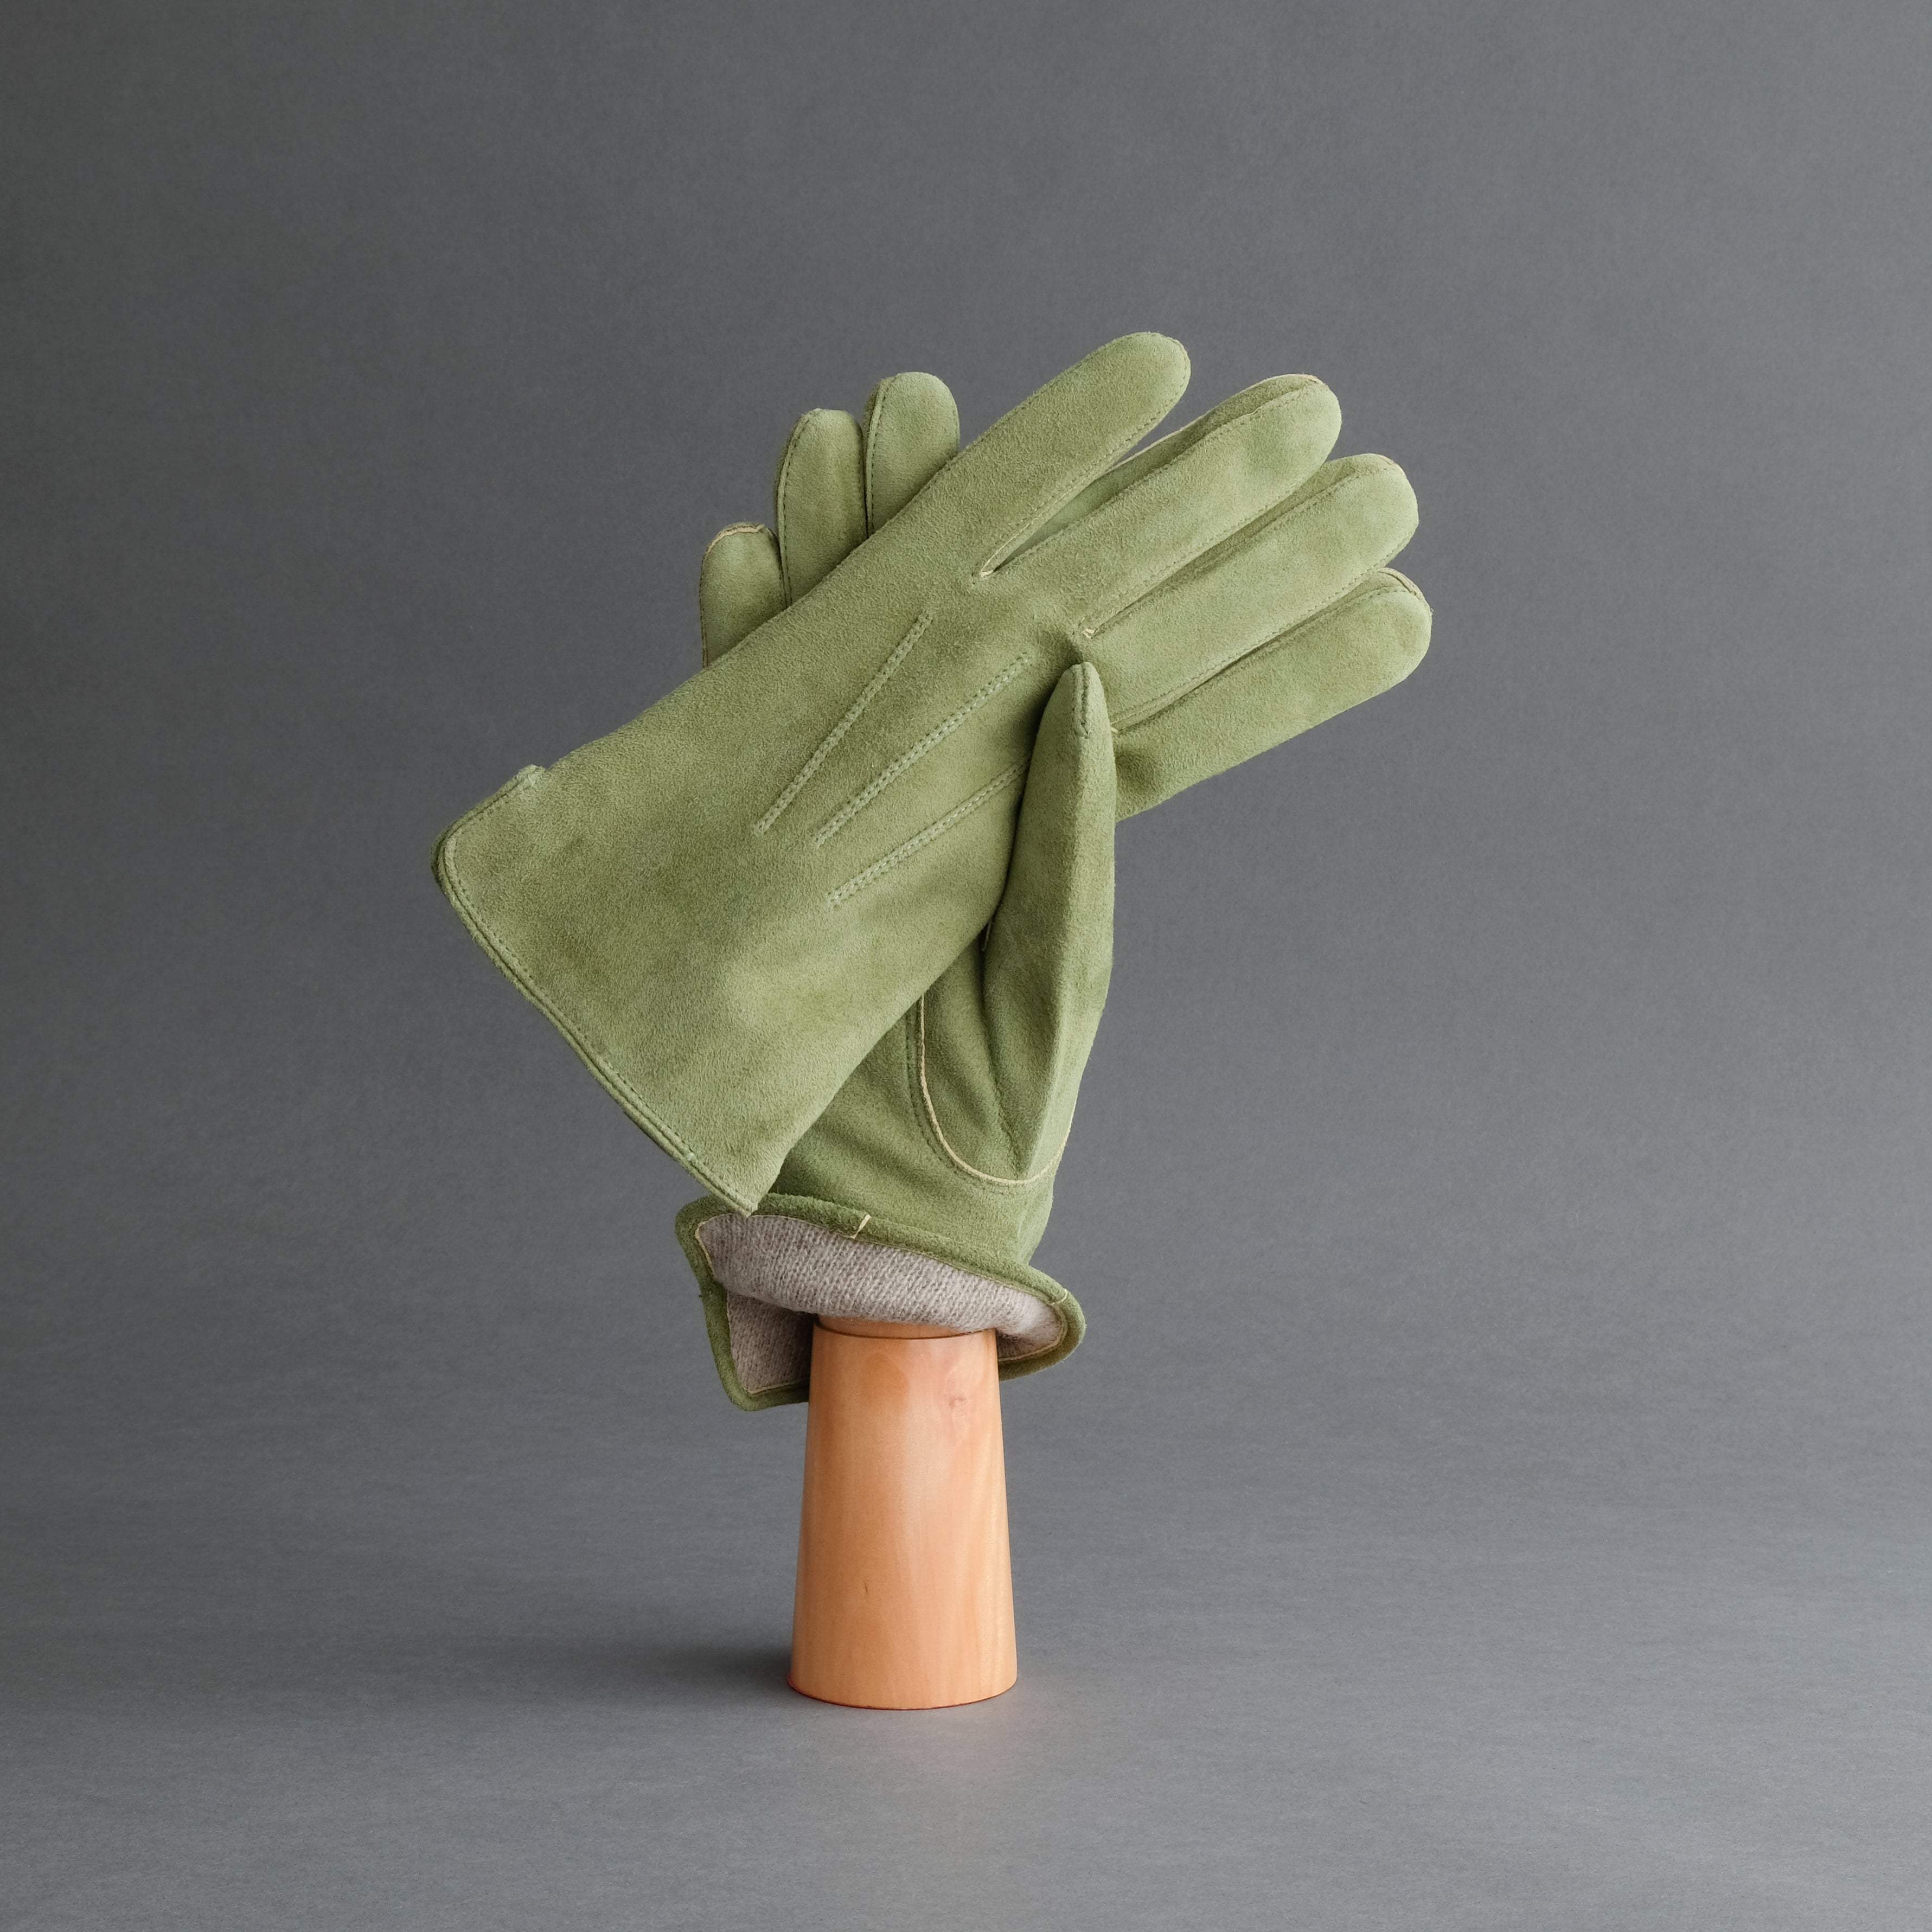 Gentlemen's Gloves from Moss Goatskin Lined with Cashmere - TR Handschuhe Wien - Thomas Riemer Handmade Gloves